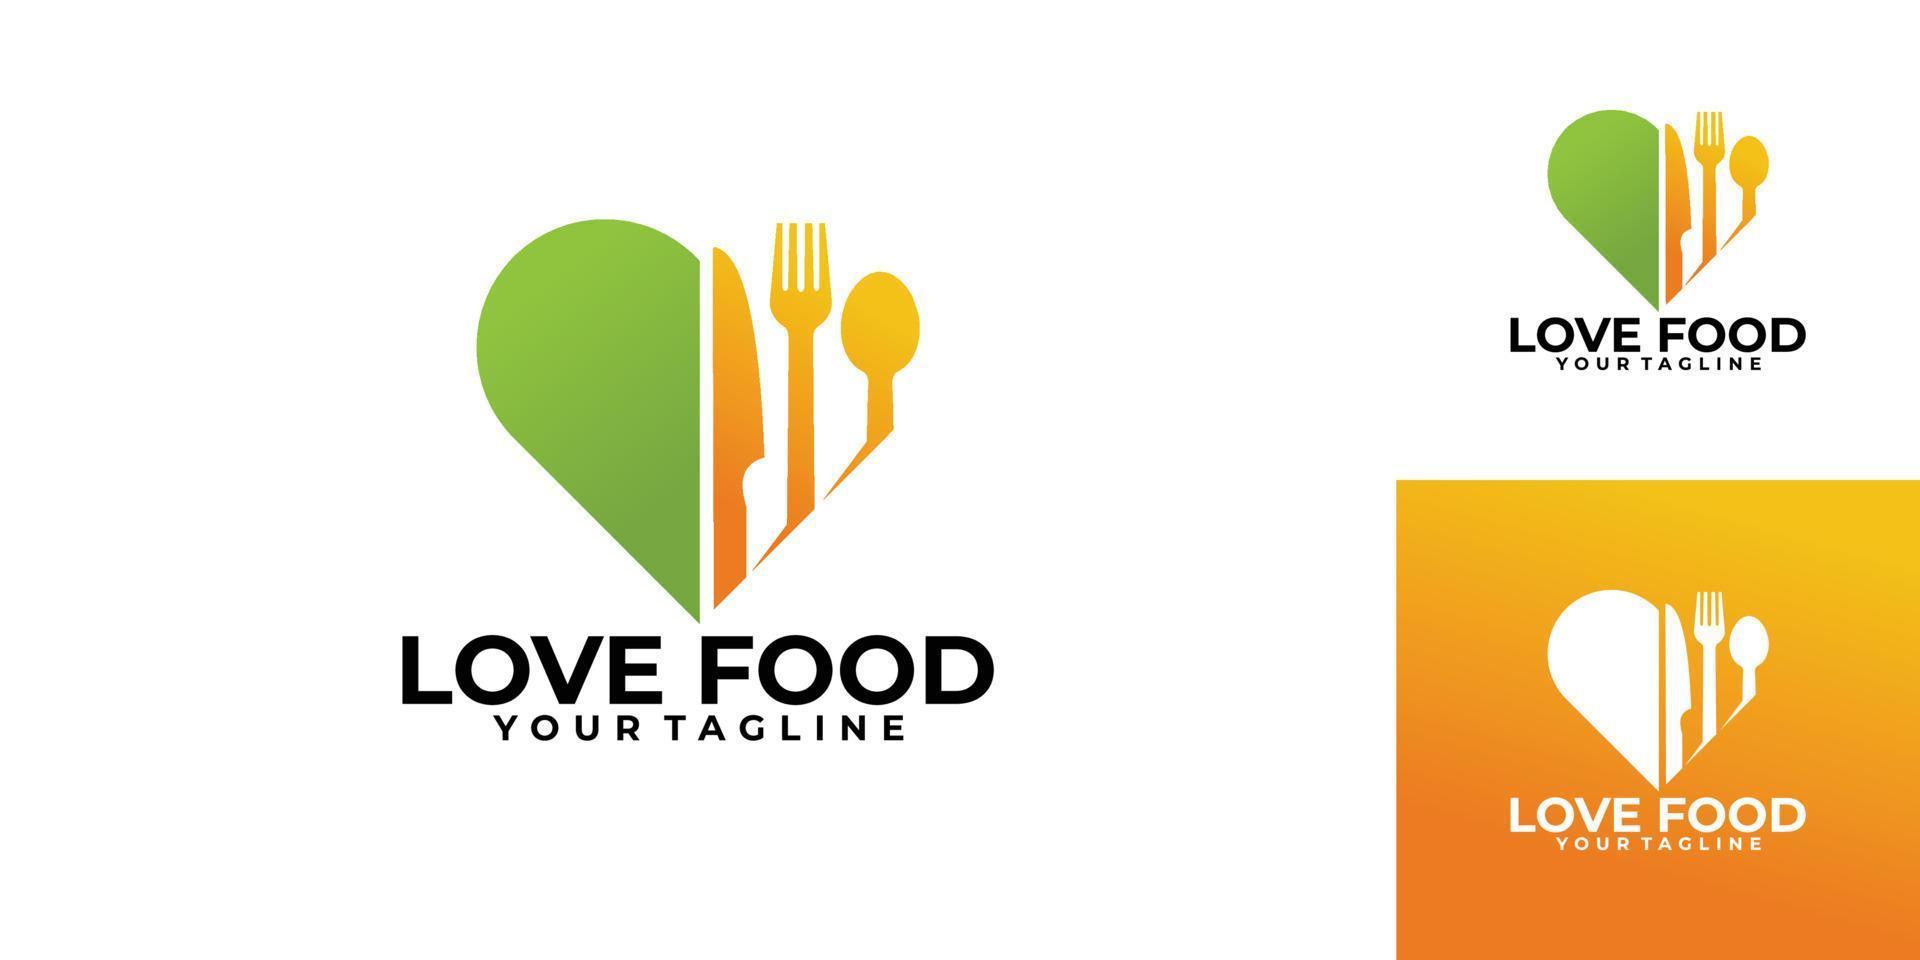 vetor de ícone de logotipo de comida isolado